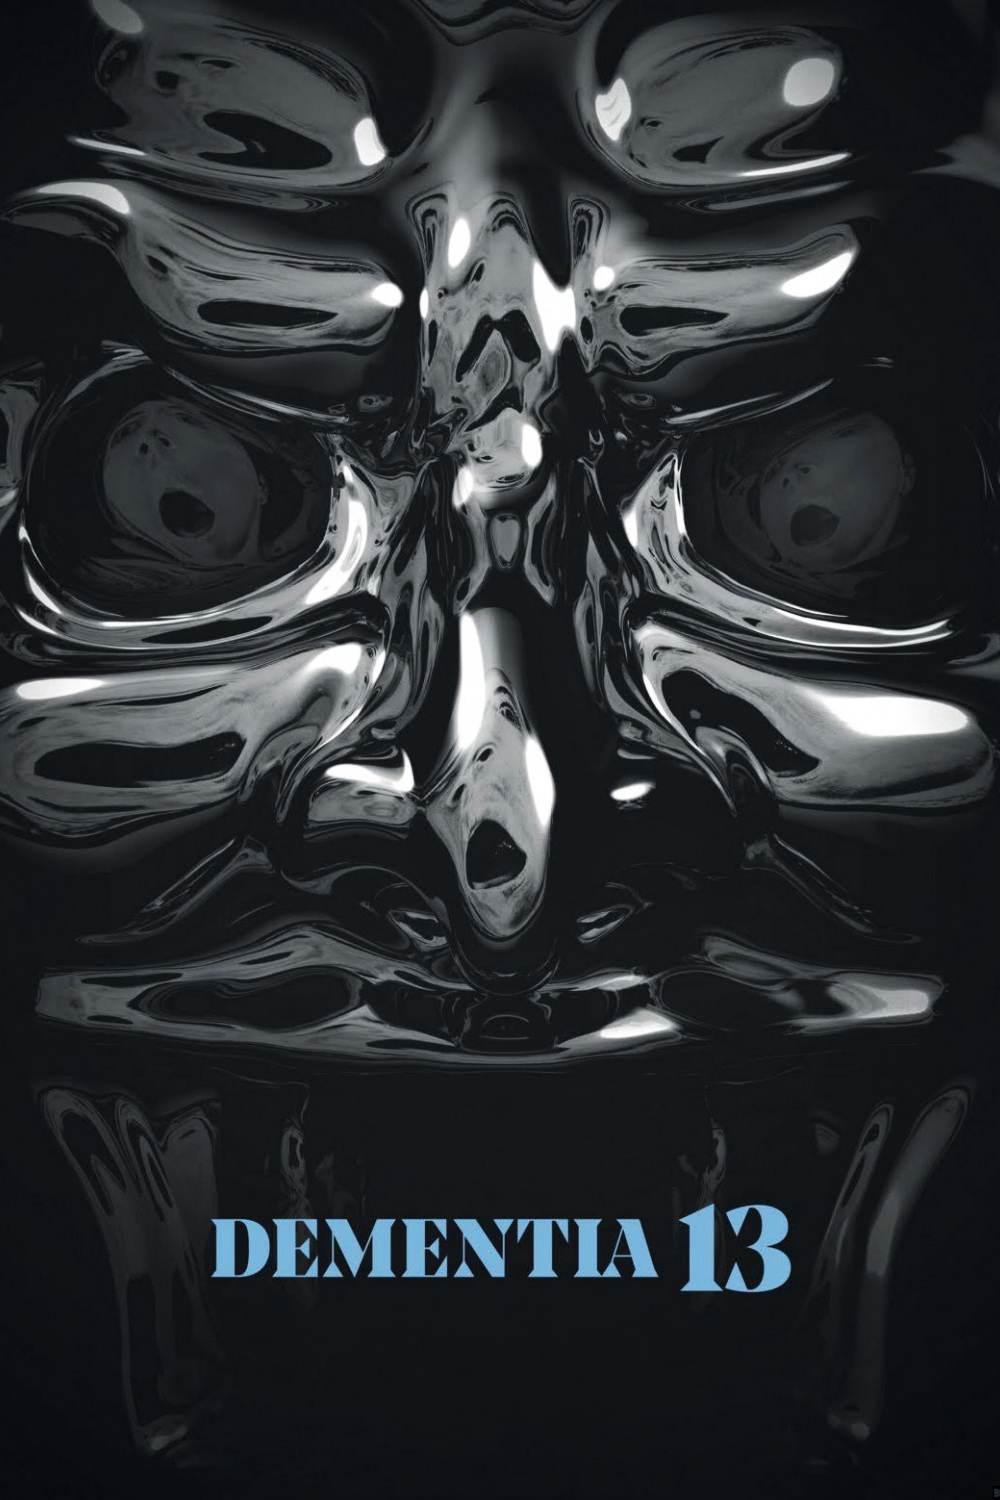 affiche du film Dementia 13